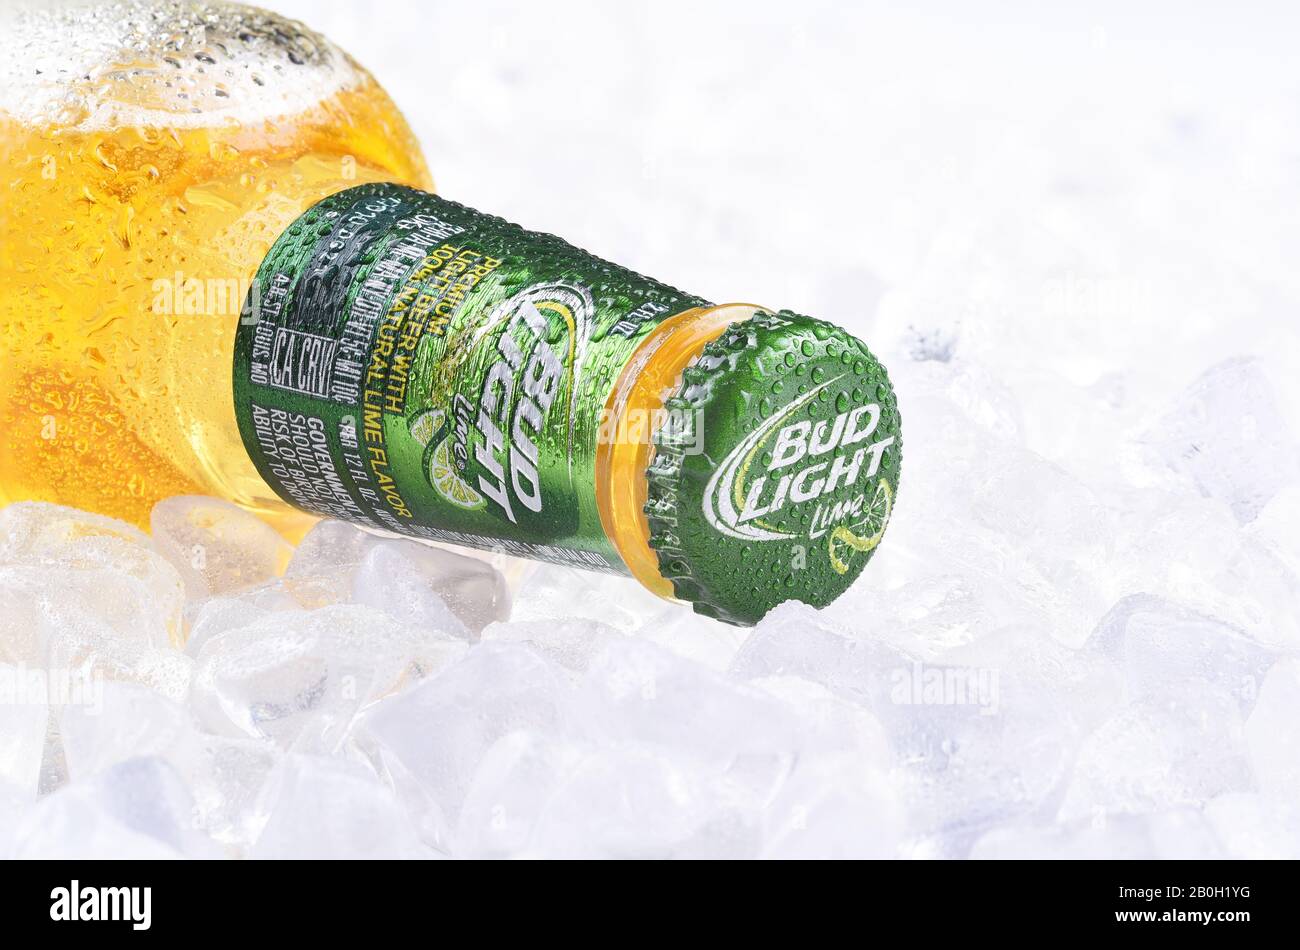 Irvine, CA - 10 AVRIL 2017 : bouteille de citron vert léger sur glace. D'Anheuser-Busch InBev, Bud Light Lime est une bière aromatisée introduite en 2008. Banque D'Images